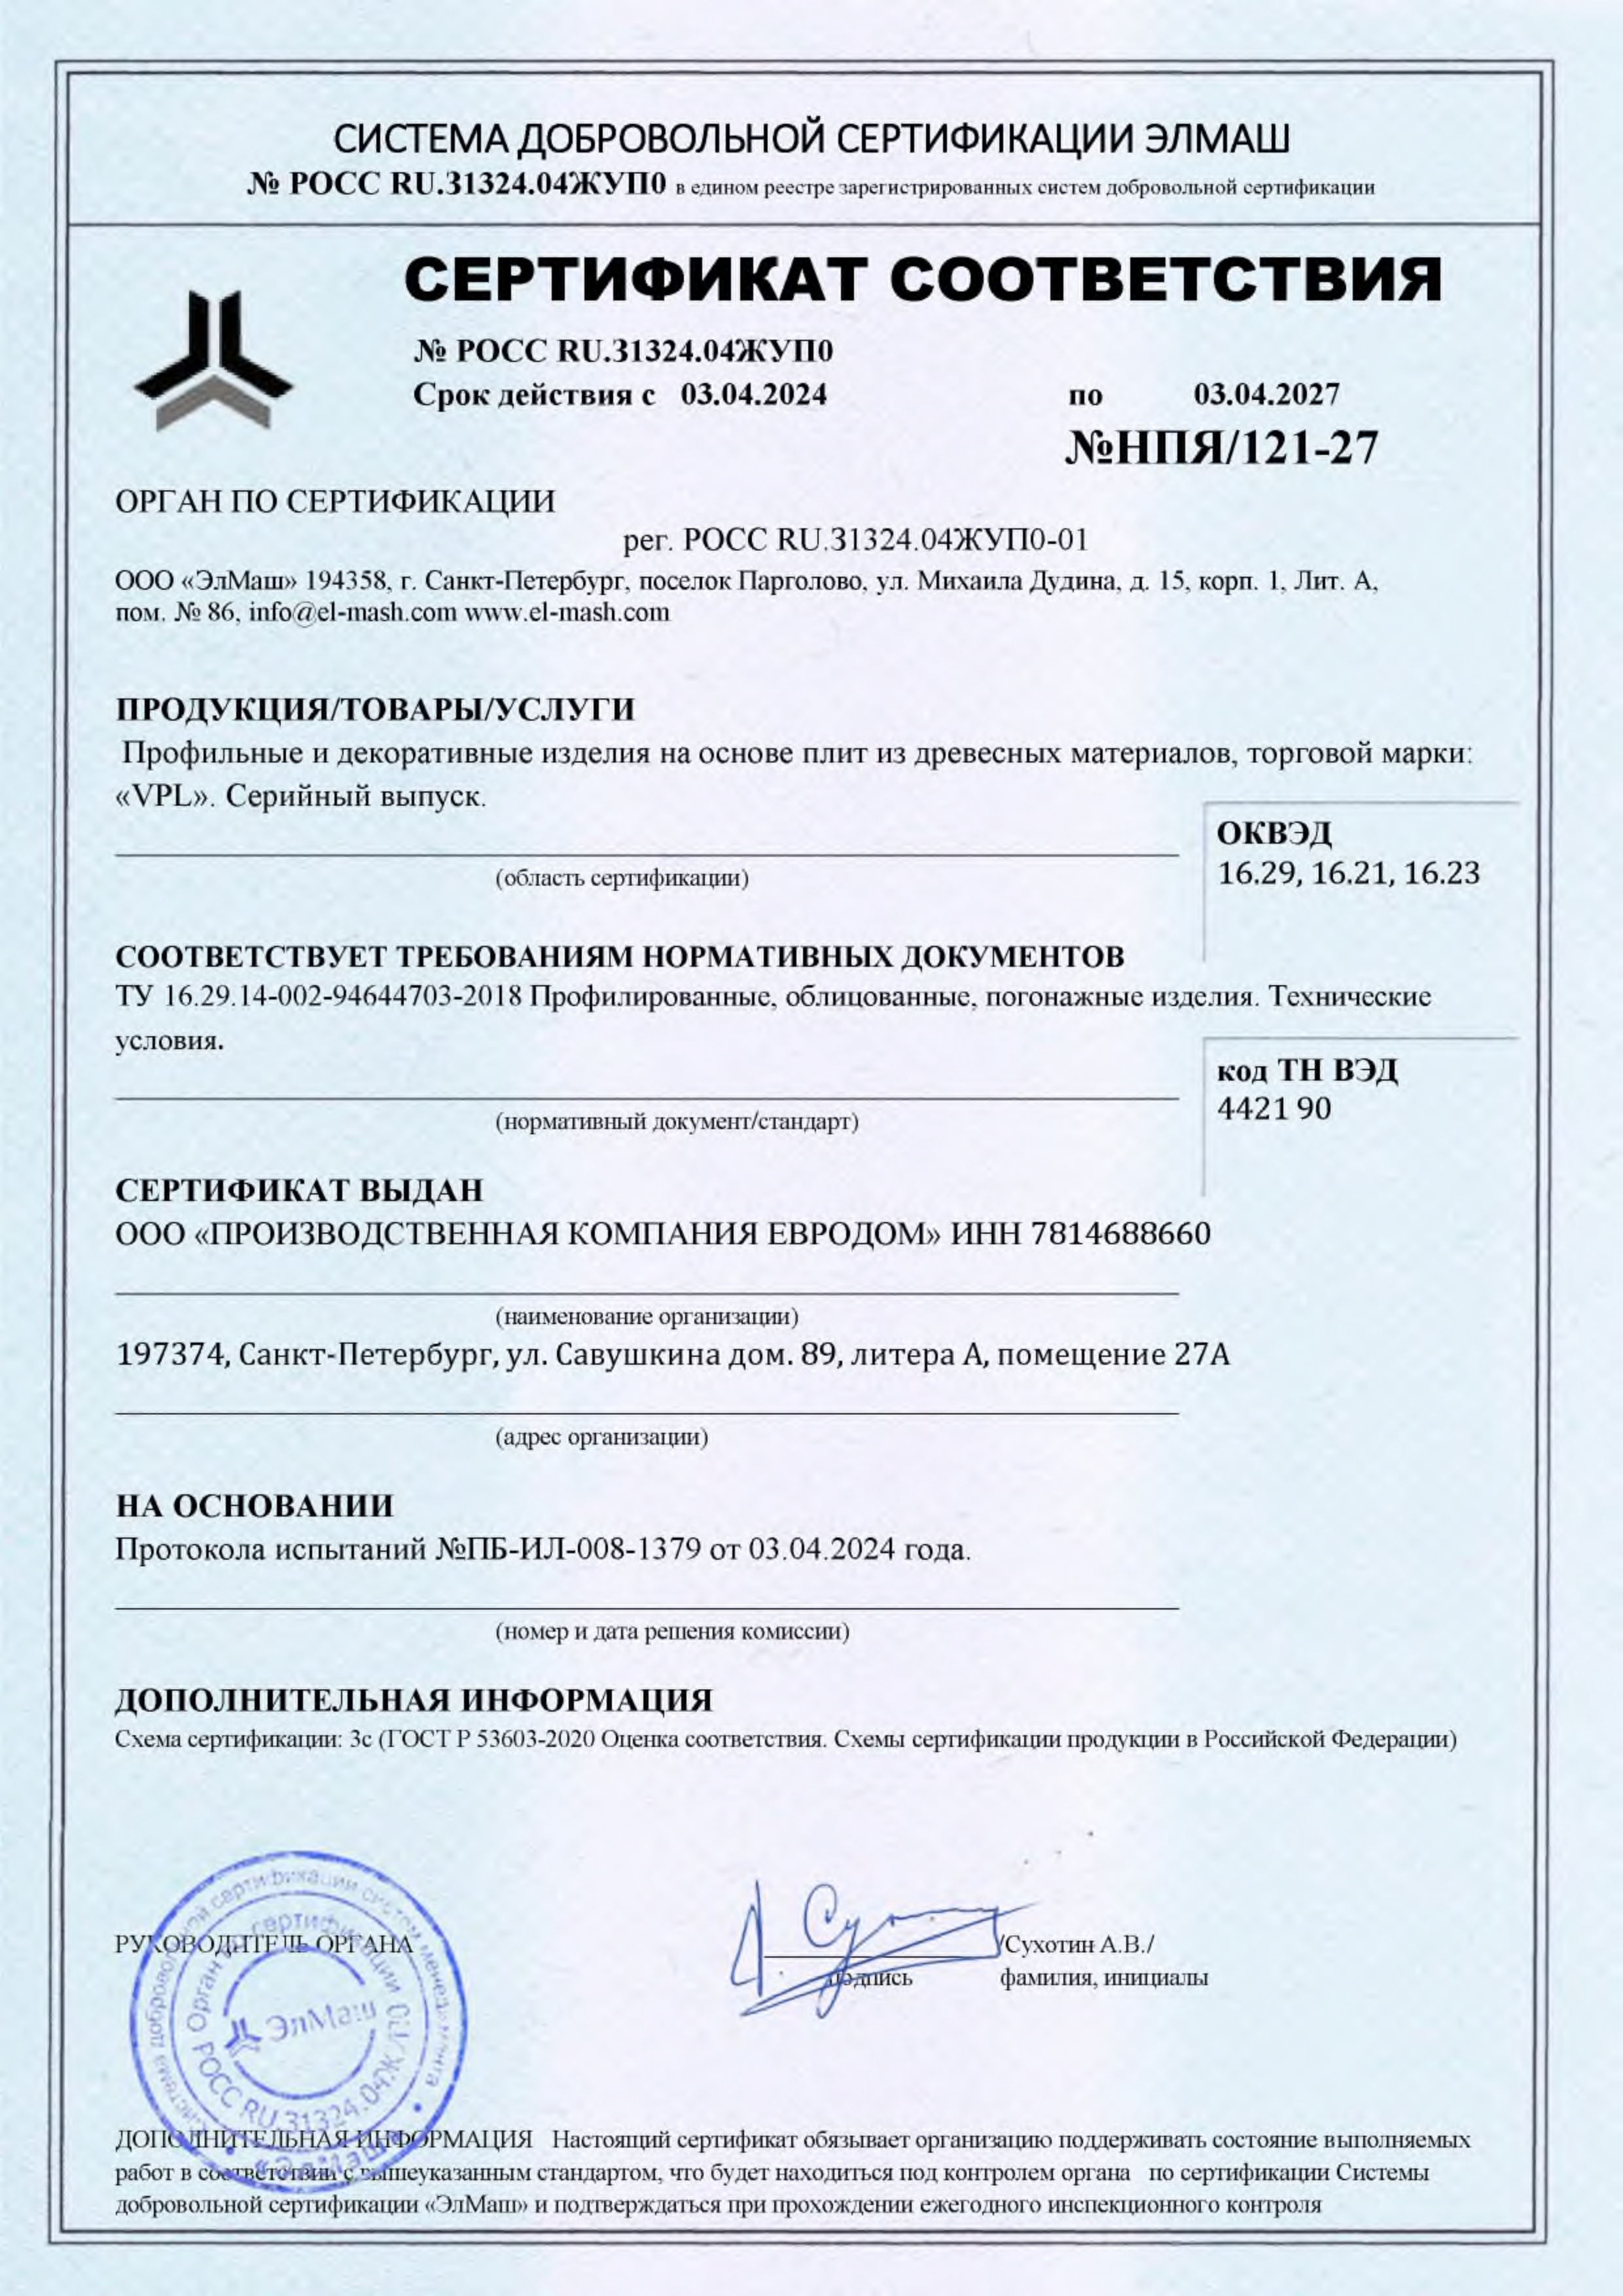 Сертификат соответствия №НПЯ-121-27